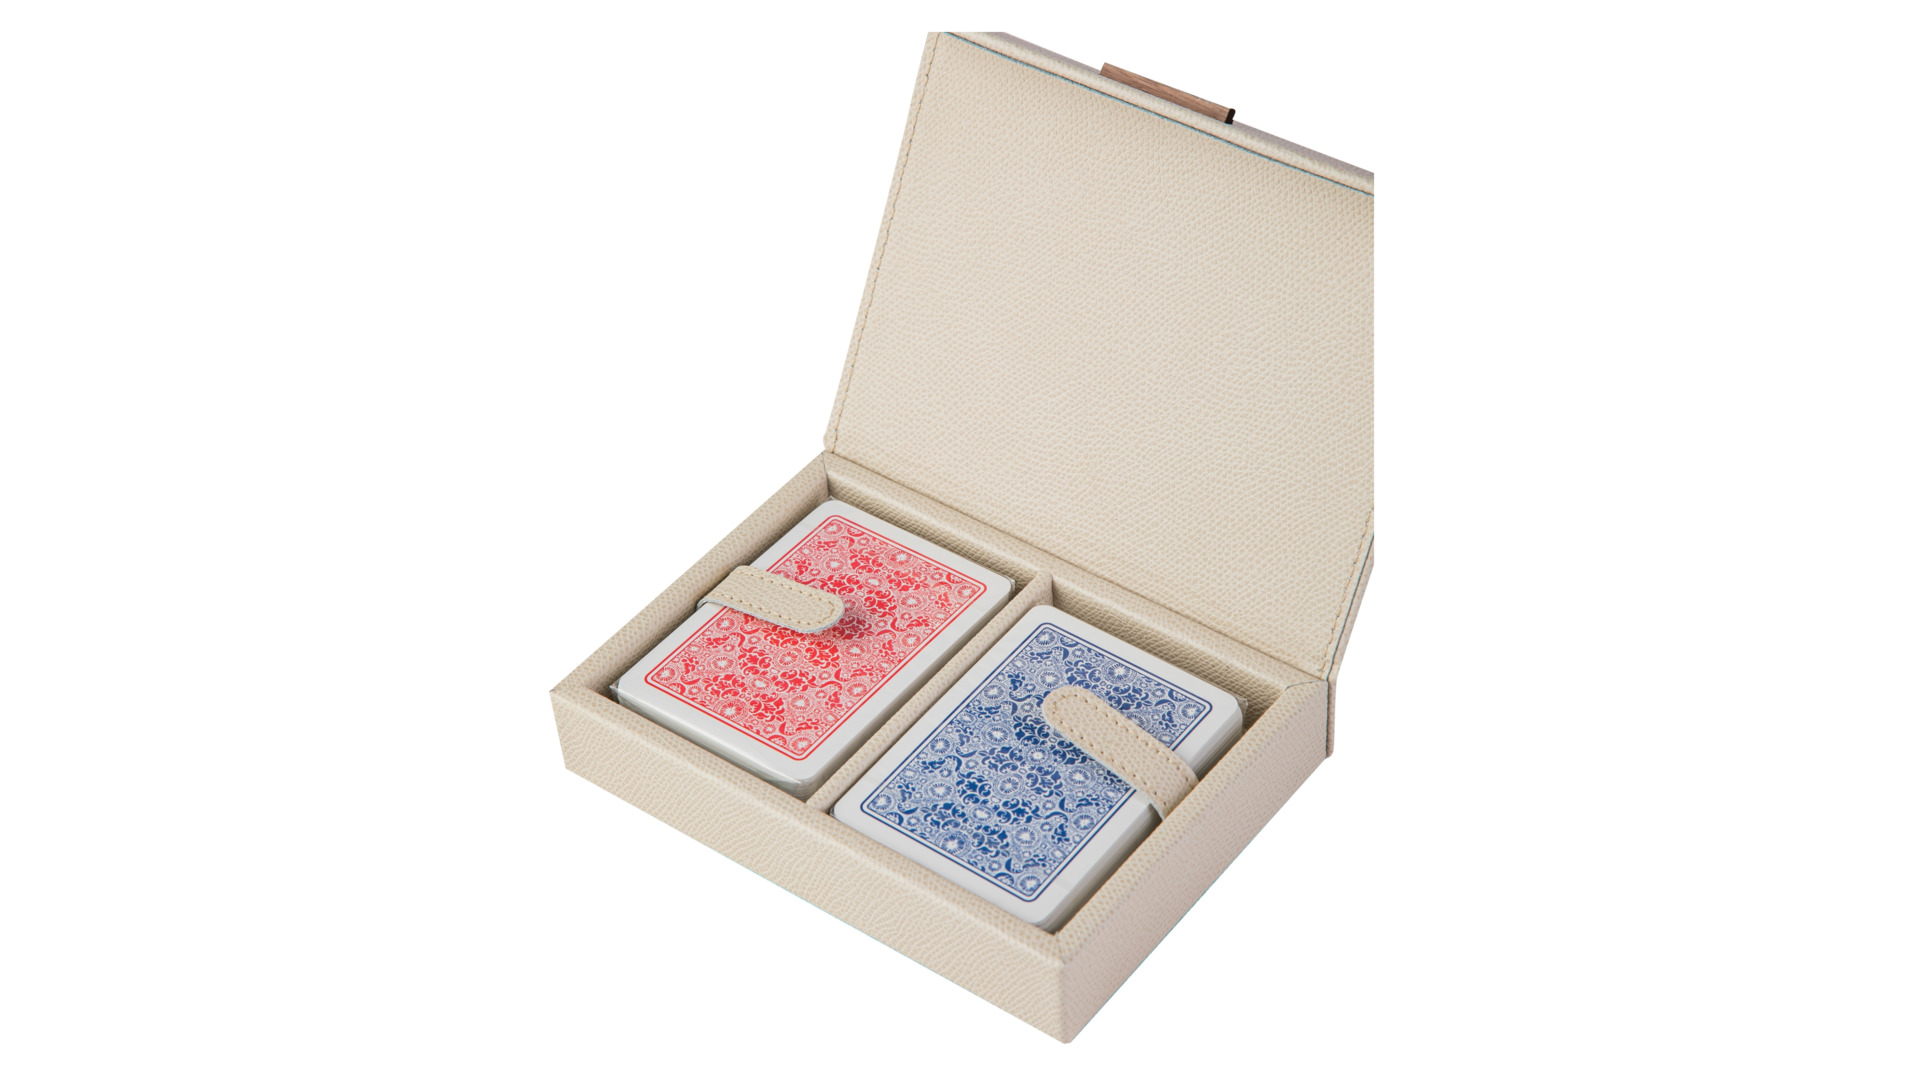 Набор игральных карт в коробке Pinetti 16,5х12,5 см, 2 шт, натуральная кожа, дерево, кремовый, п/к